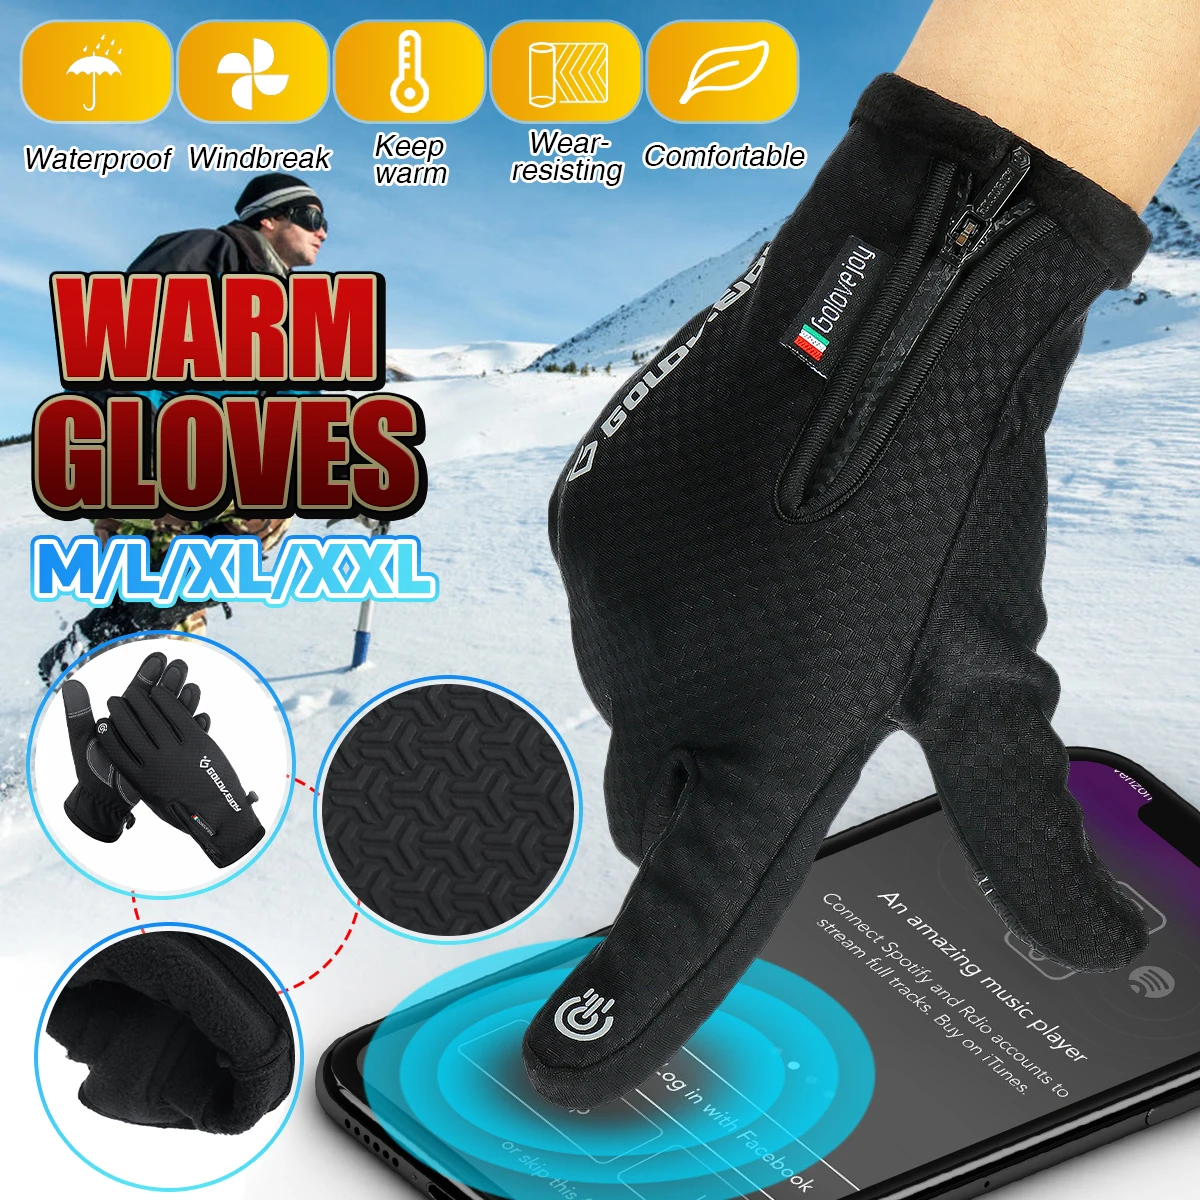 Перчатки с подогревом, зимние теплые перчатки для женщин и мужчин, противоскользящие перчатки с сенсорным экраном, дышащие, водонепроницаемые, на молнии, ветрозащитные черные перчатки